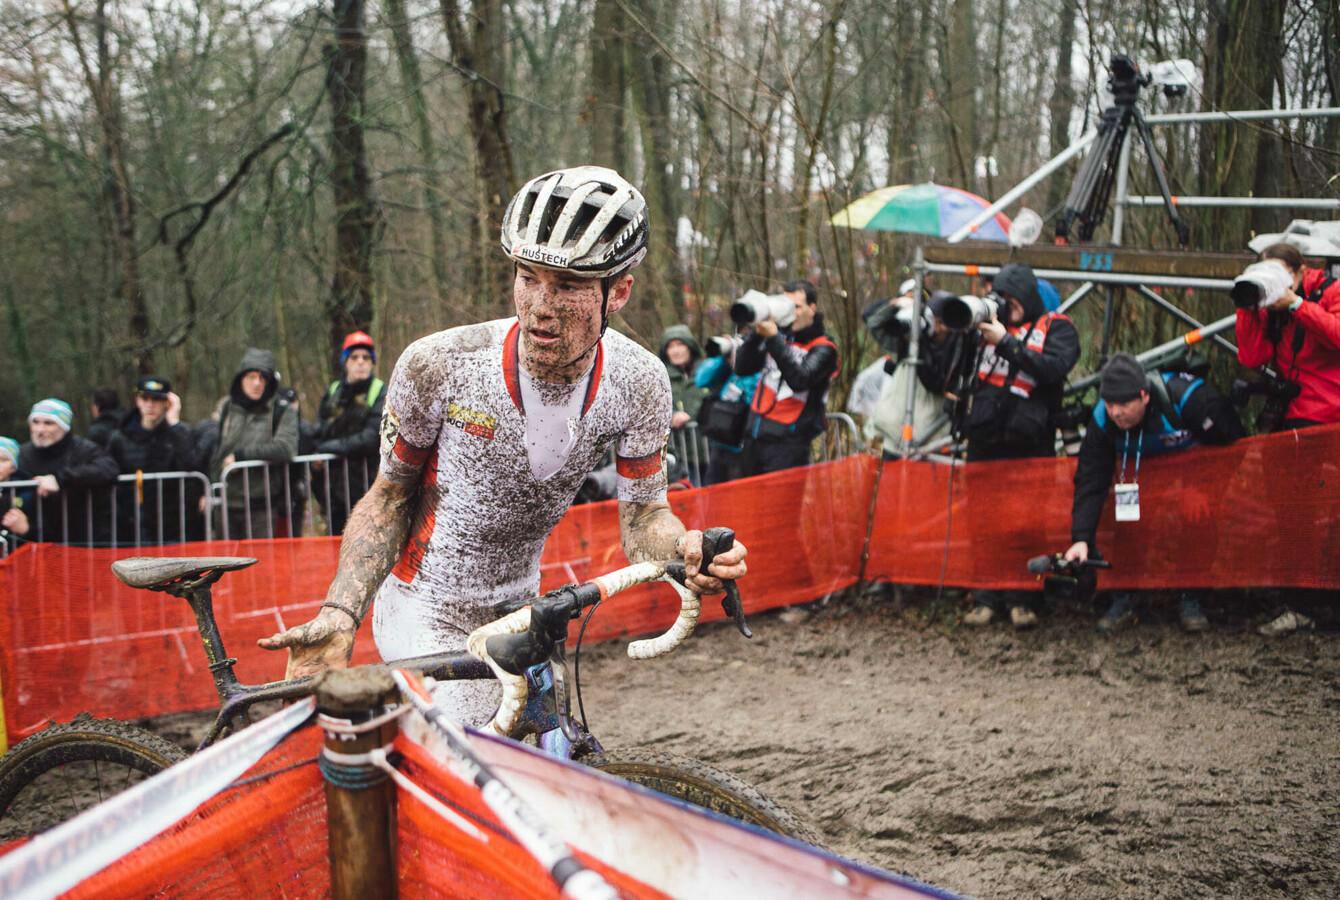 Coupe du Monde Cyclo-cross UCI 2020-2021 : annulation des épreuves Juniors et Moins de 23 ans des manches de Namur et Termonde (Belgique)